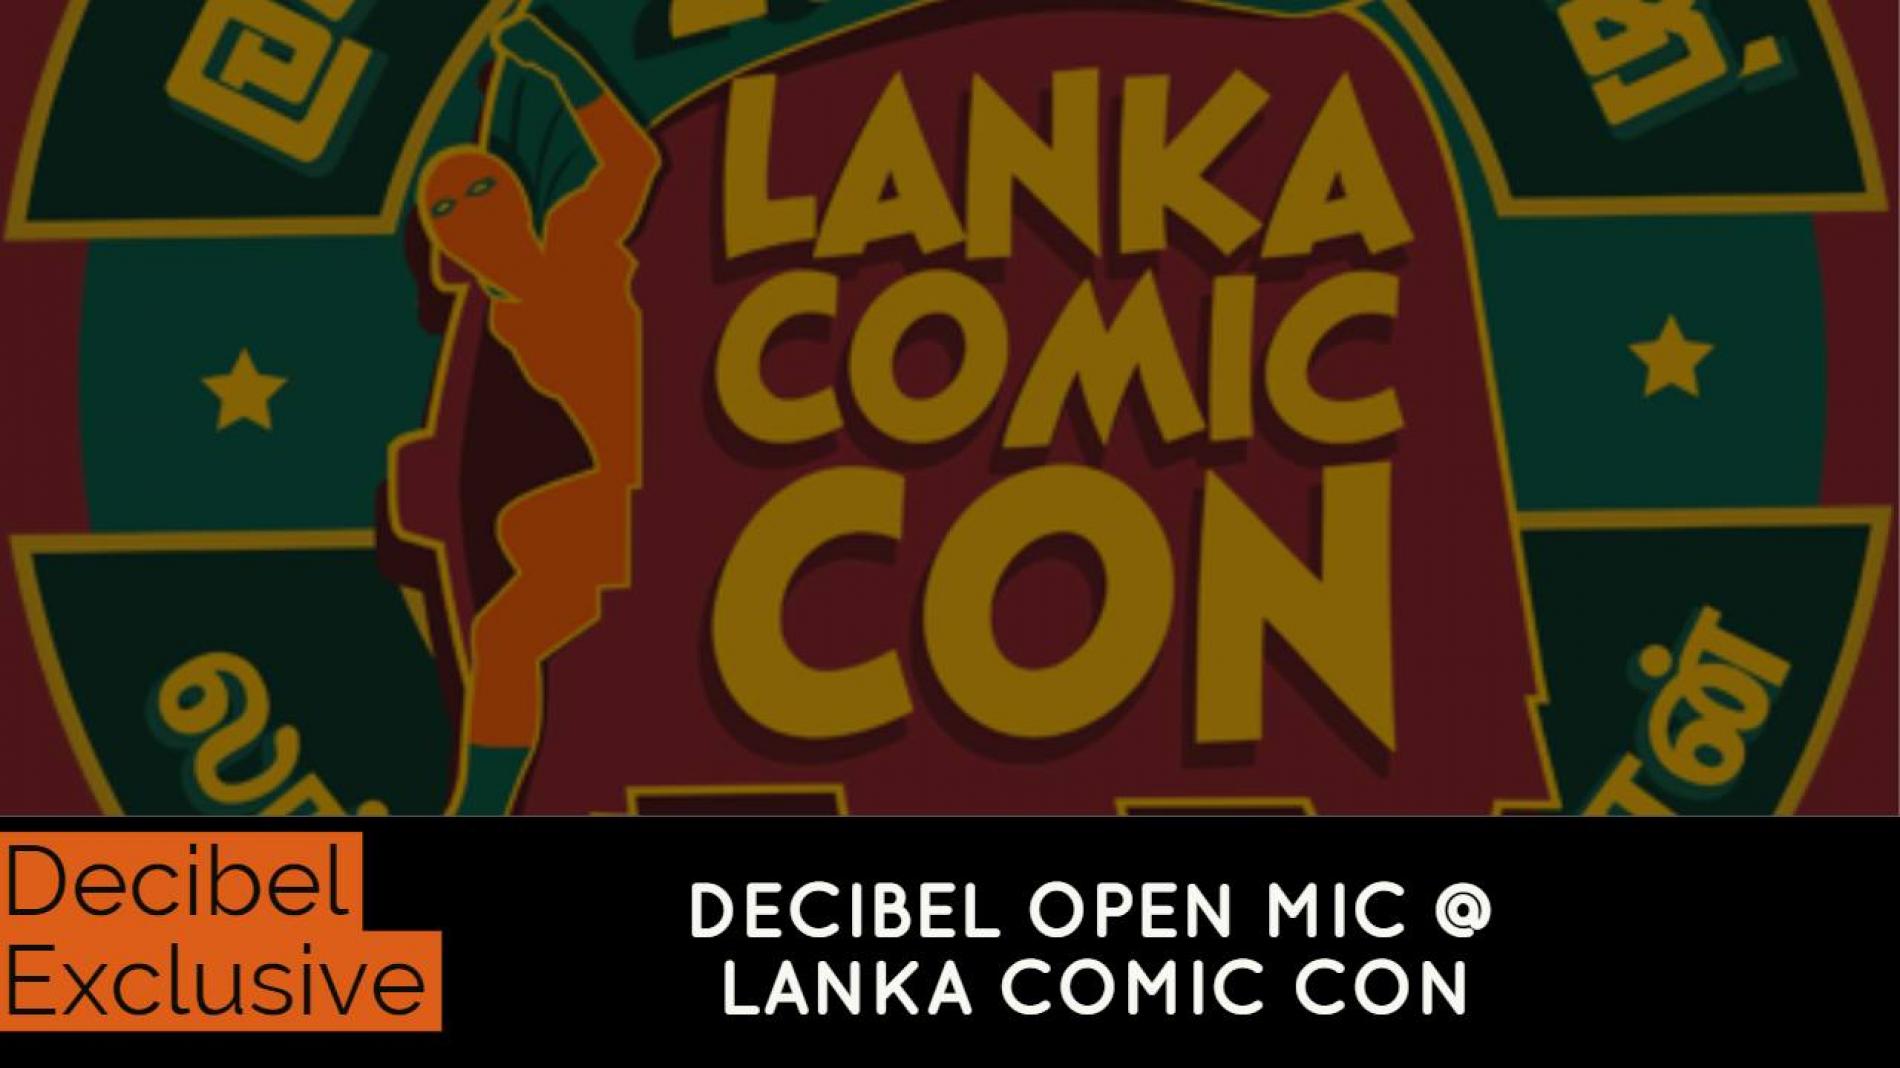 Decibel Open Mic Event @ Lanka Comic Con